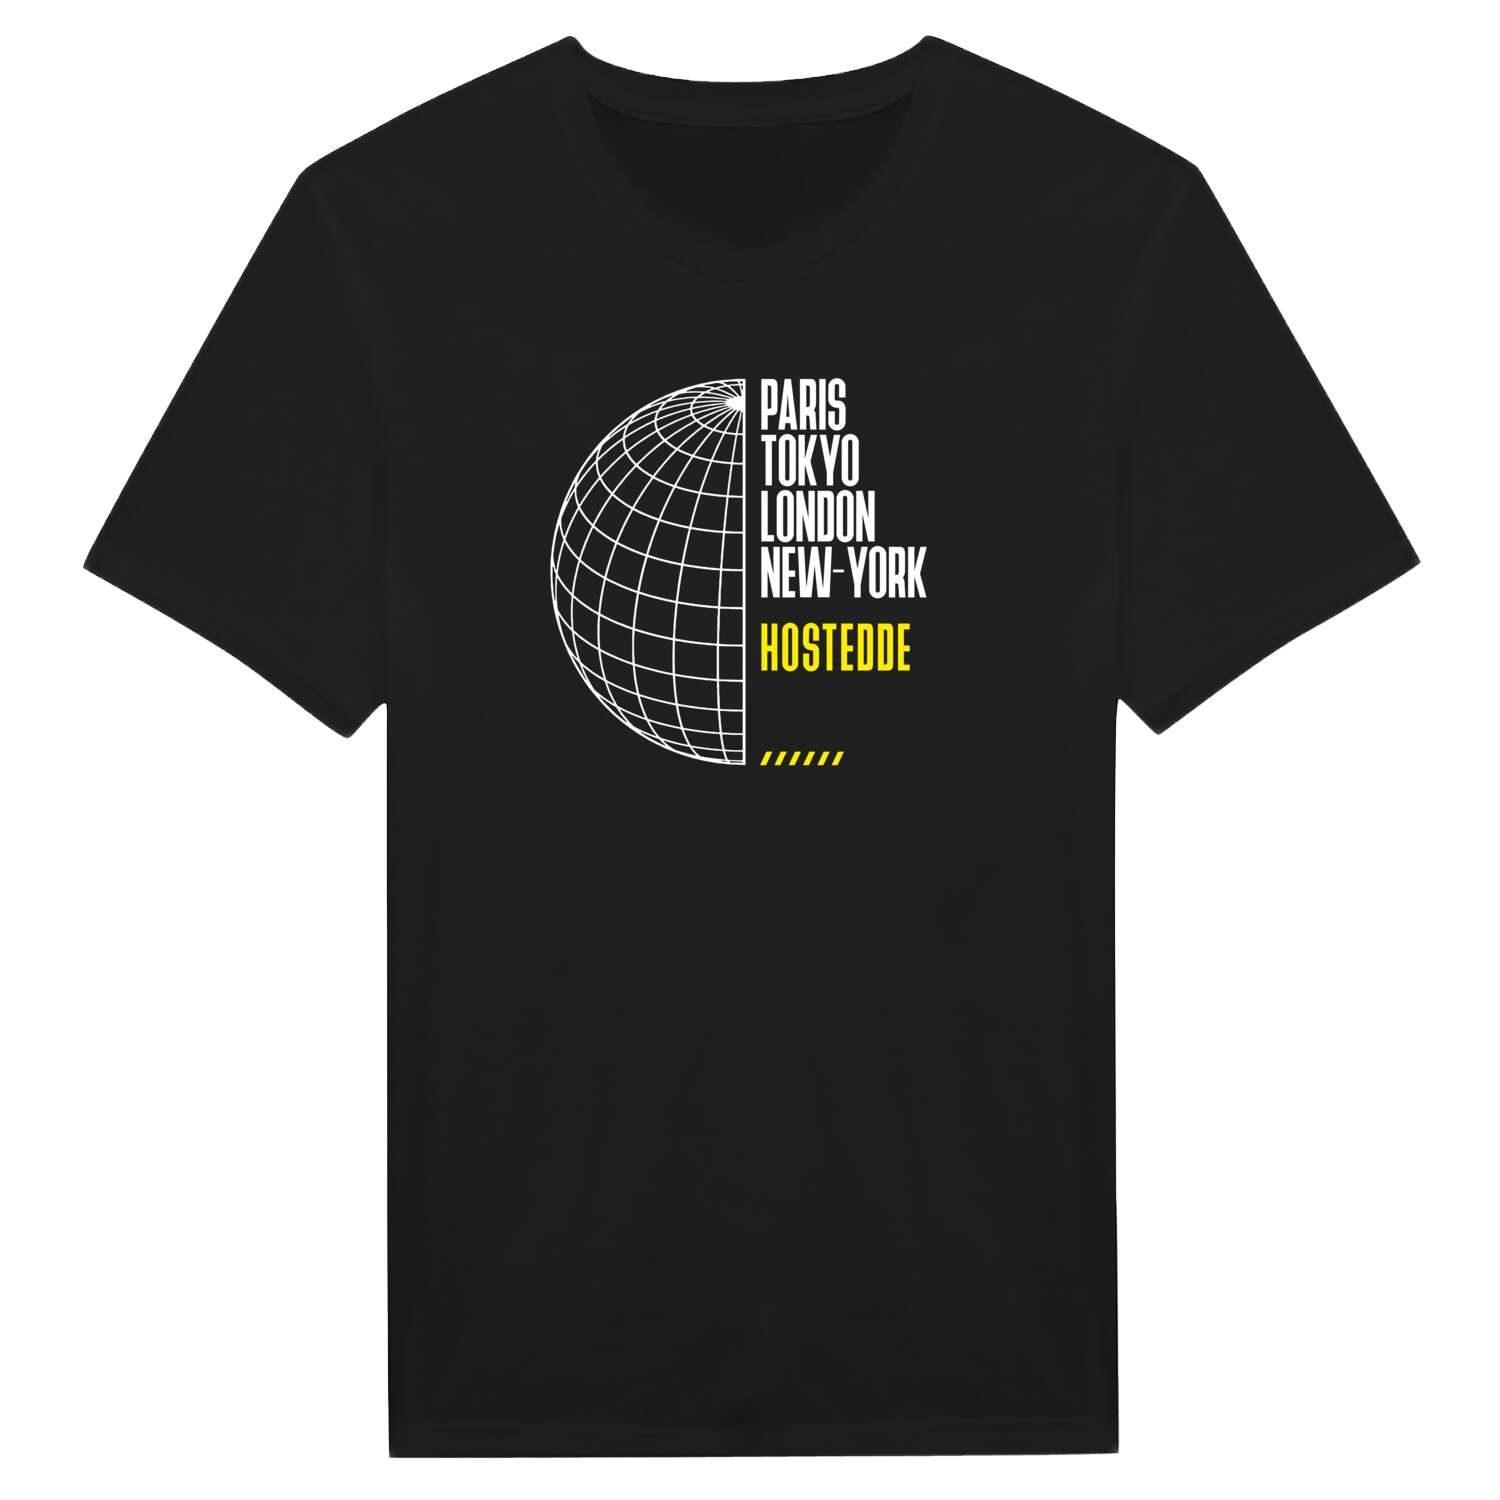 Hostedde T-Shirt »Paris Tokyo London«